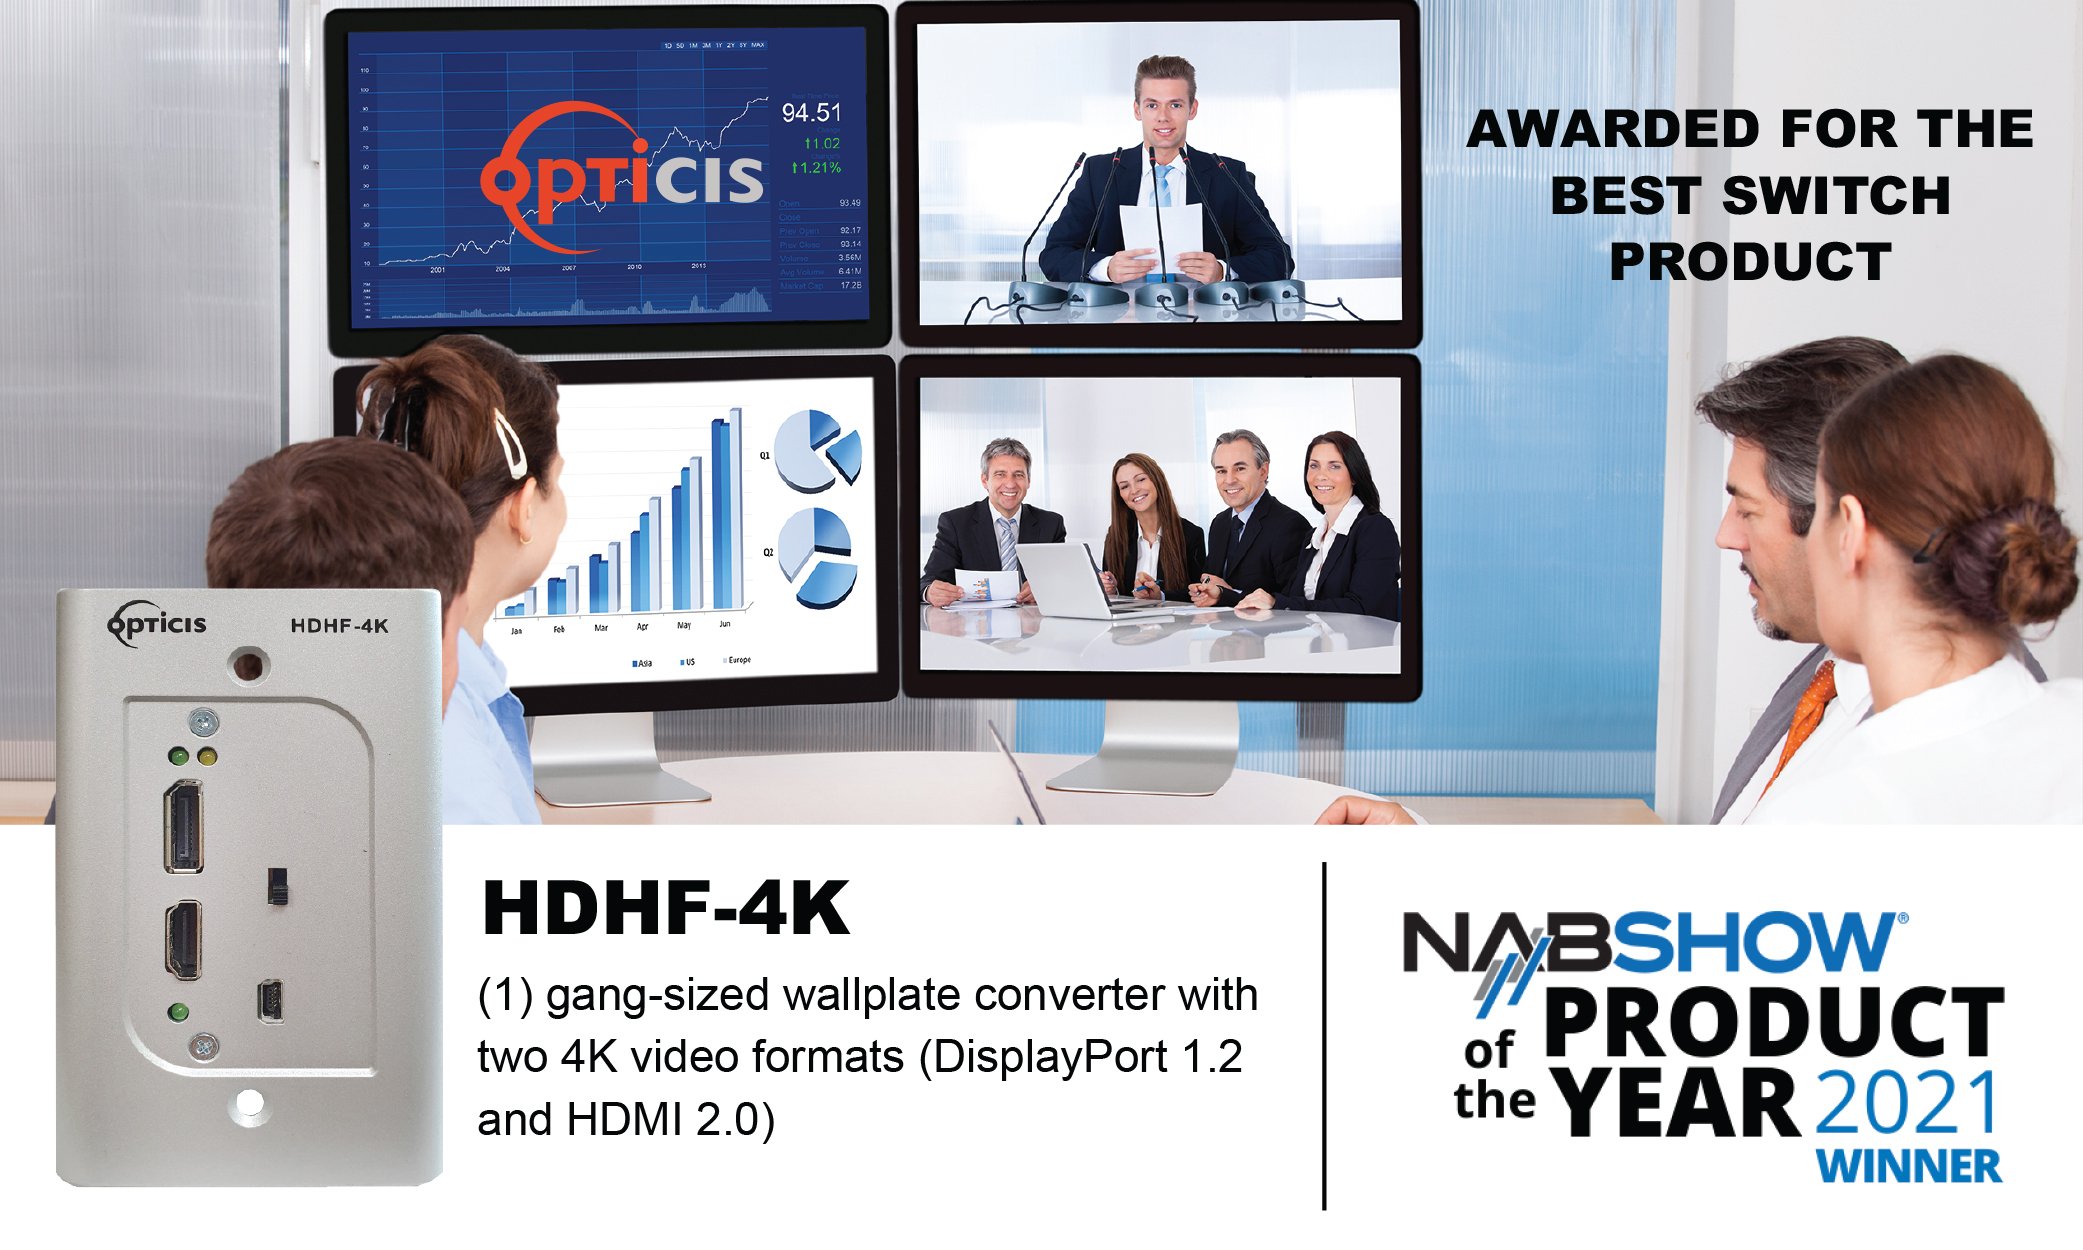 HDHF-4K — Opticis USA